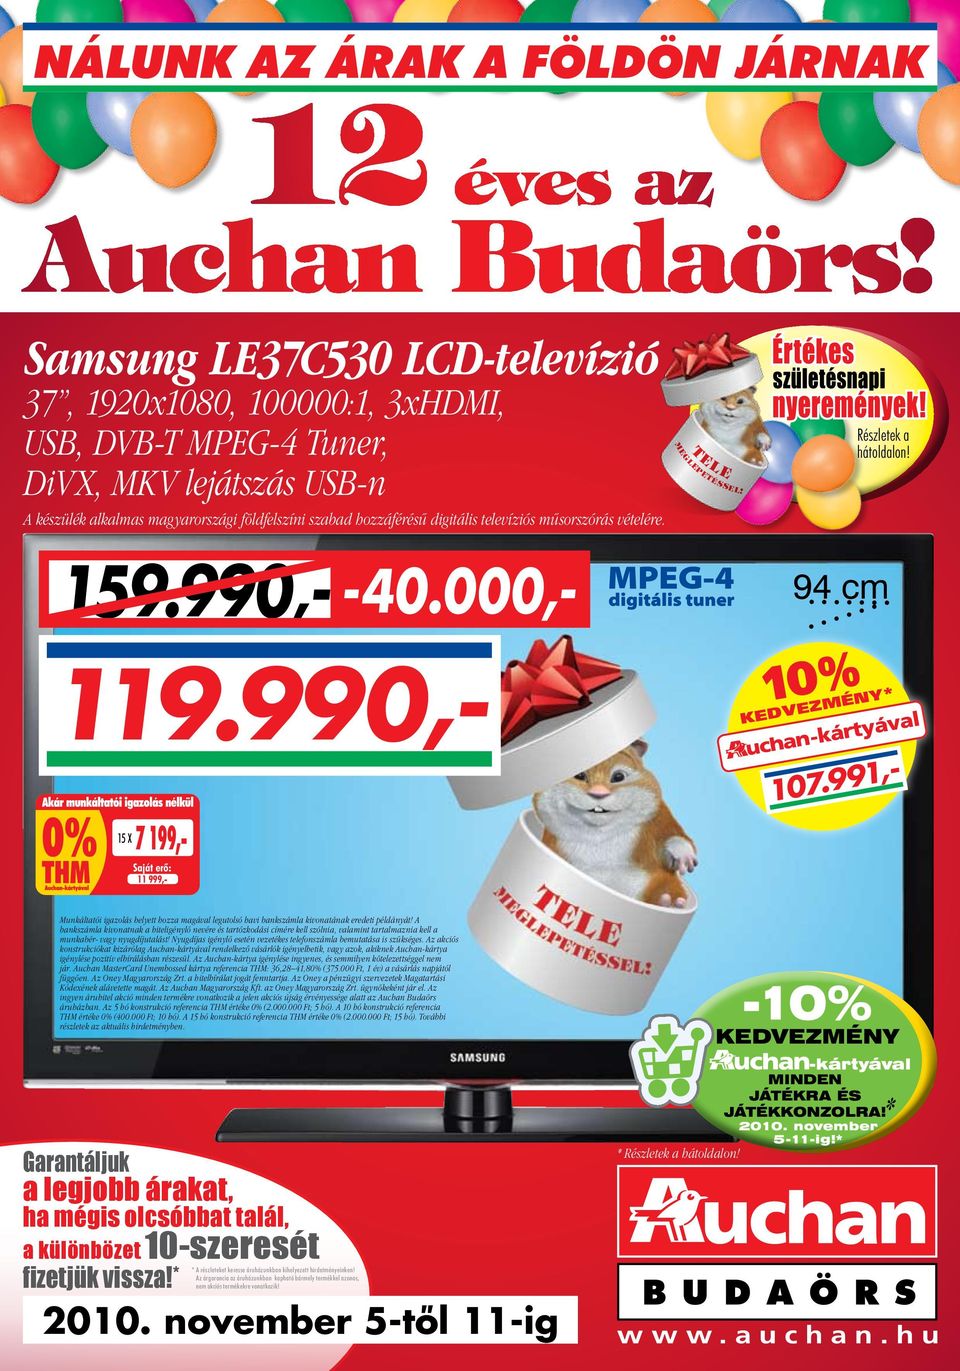 Auchan Budaörs! Samsung LE37C530 LCD-televízió - PDF Free Download